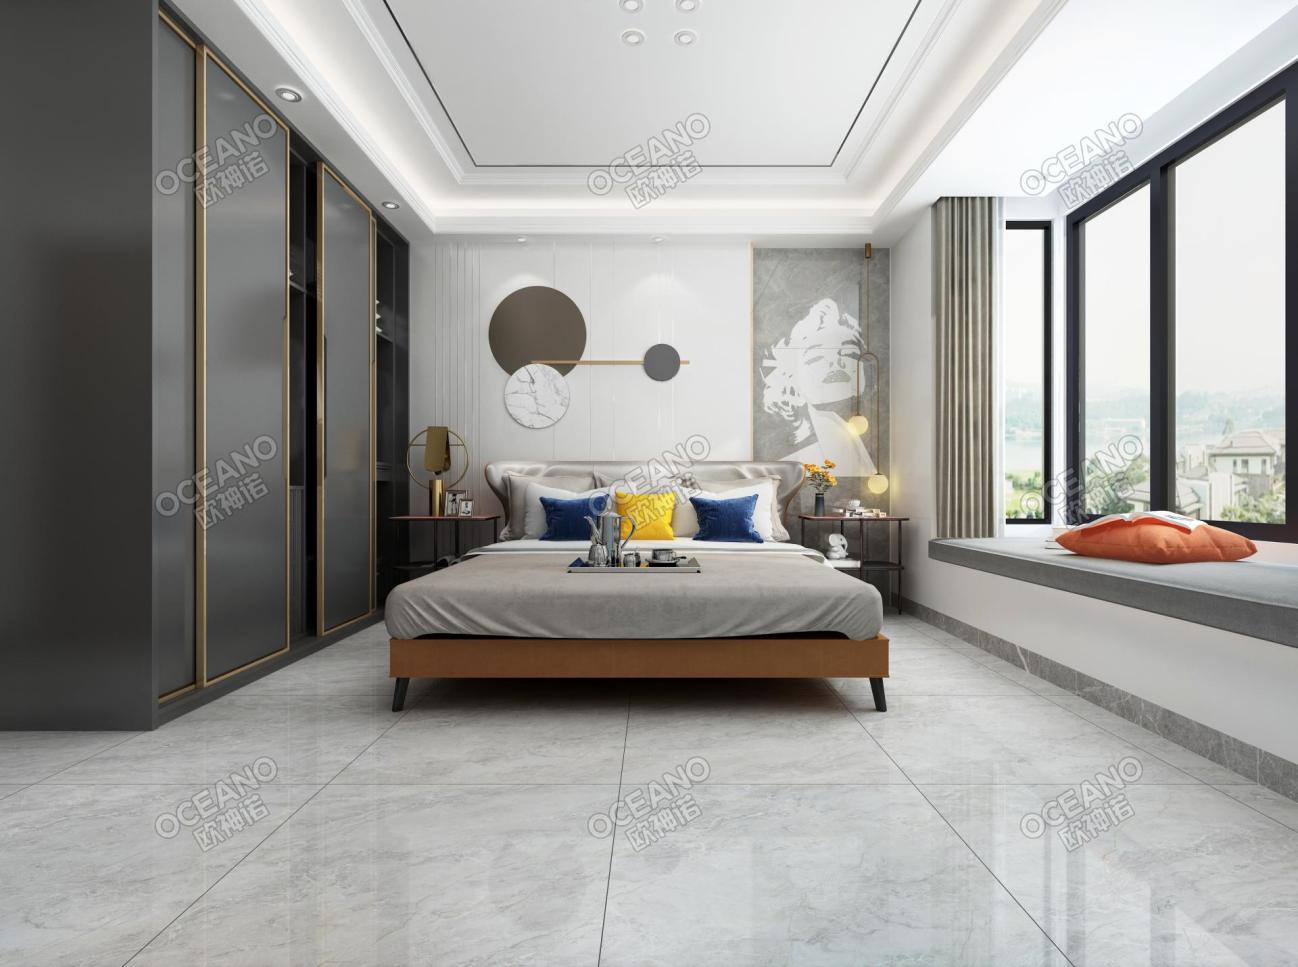 瓷砖效果图 卧室瓷砖效果图 按风格 现代 欧式 中式 新古典 地中海